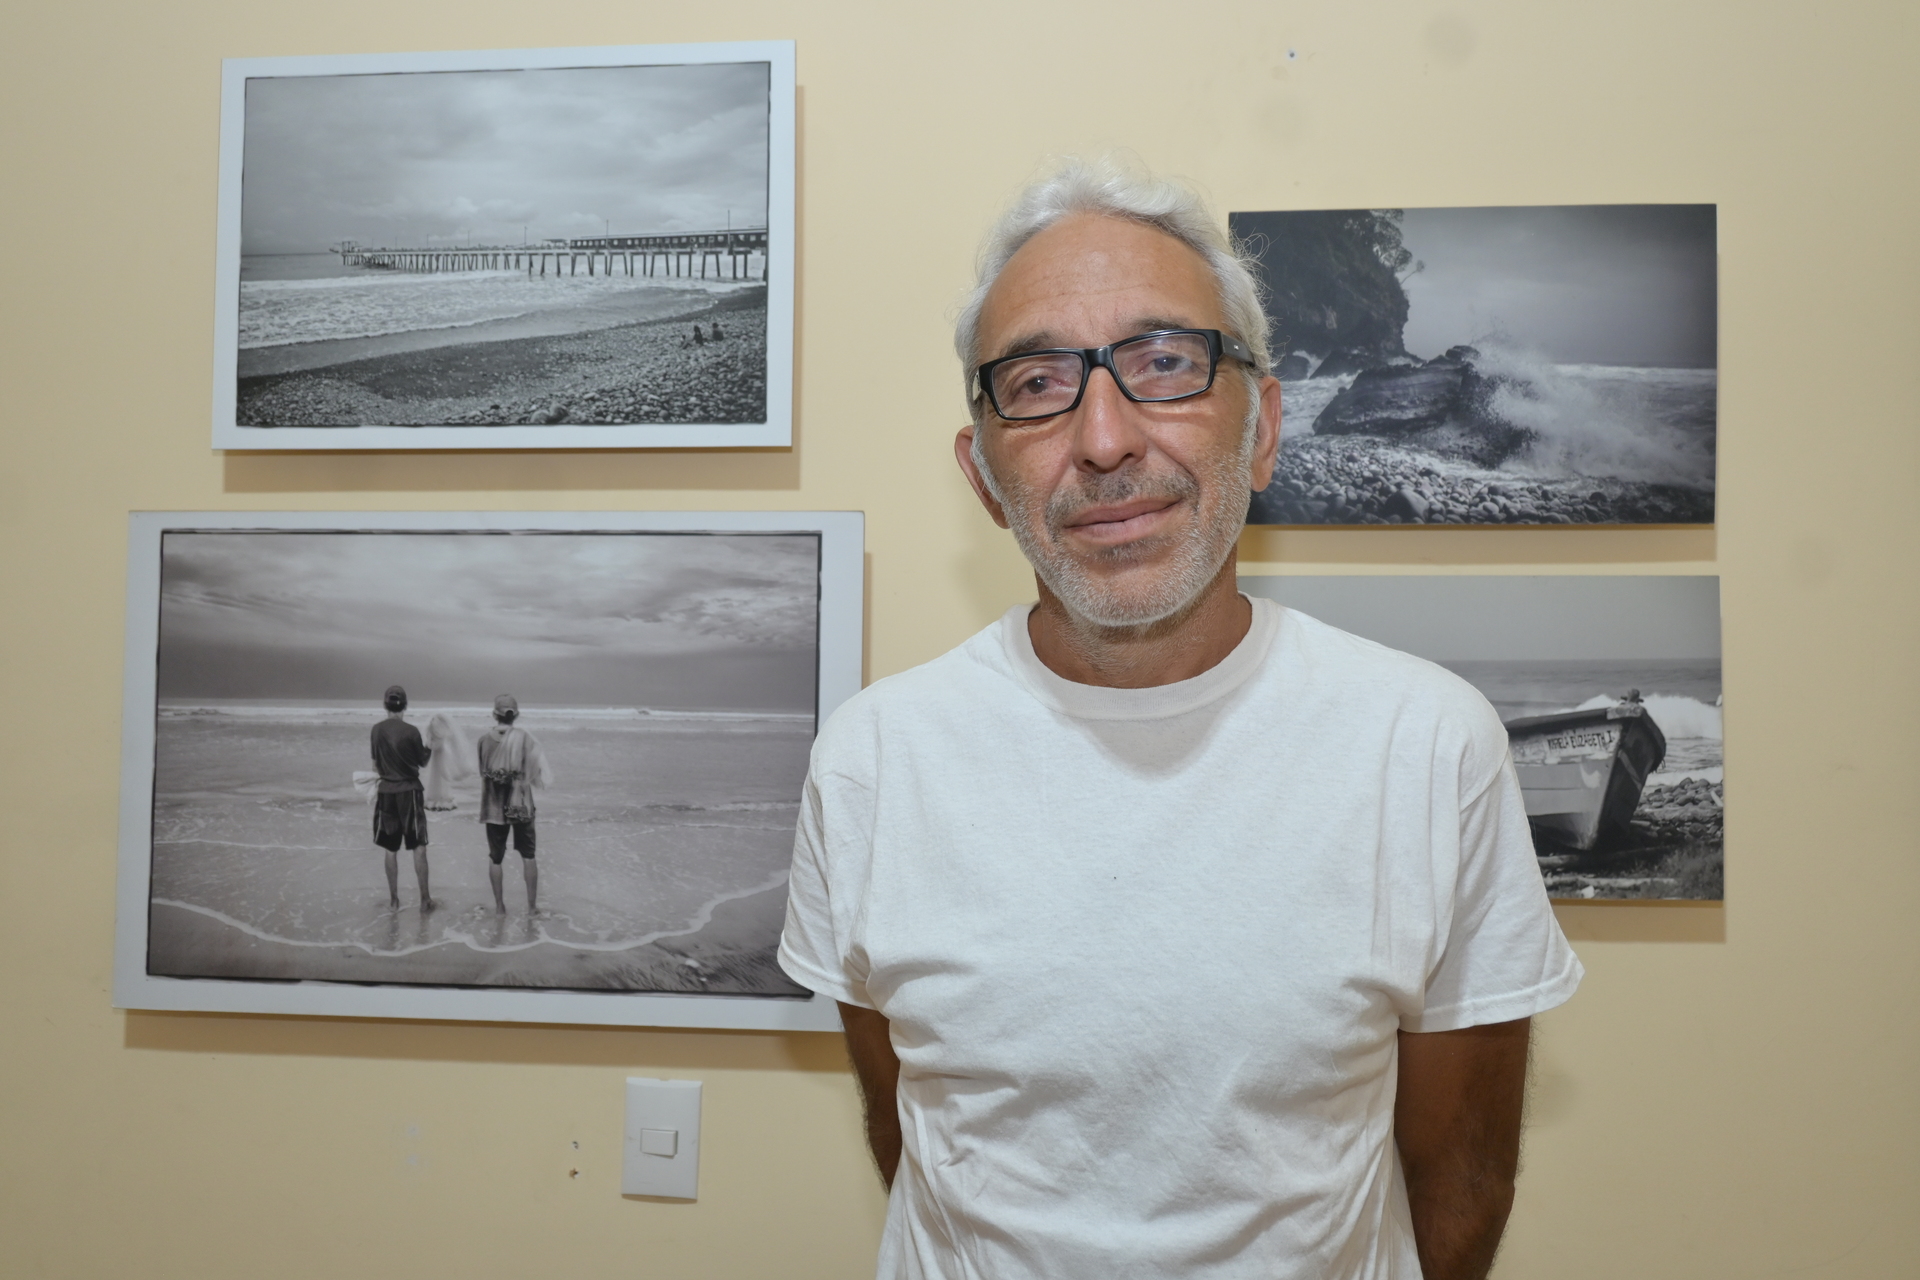  El fotógrafo lagunero Francisco Aguirre (Torreón, 1964) ha retornado al terruño tras 24 años de ausencia. (RAMÓN SOTOMAYOR)